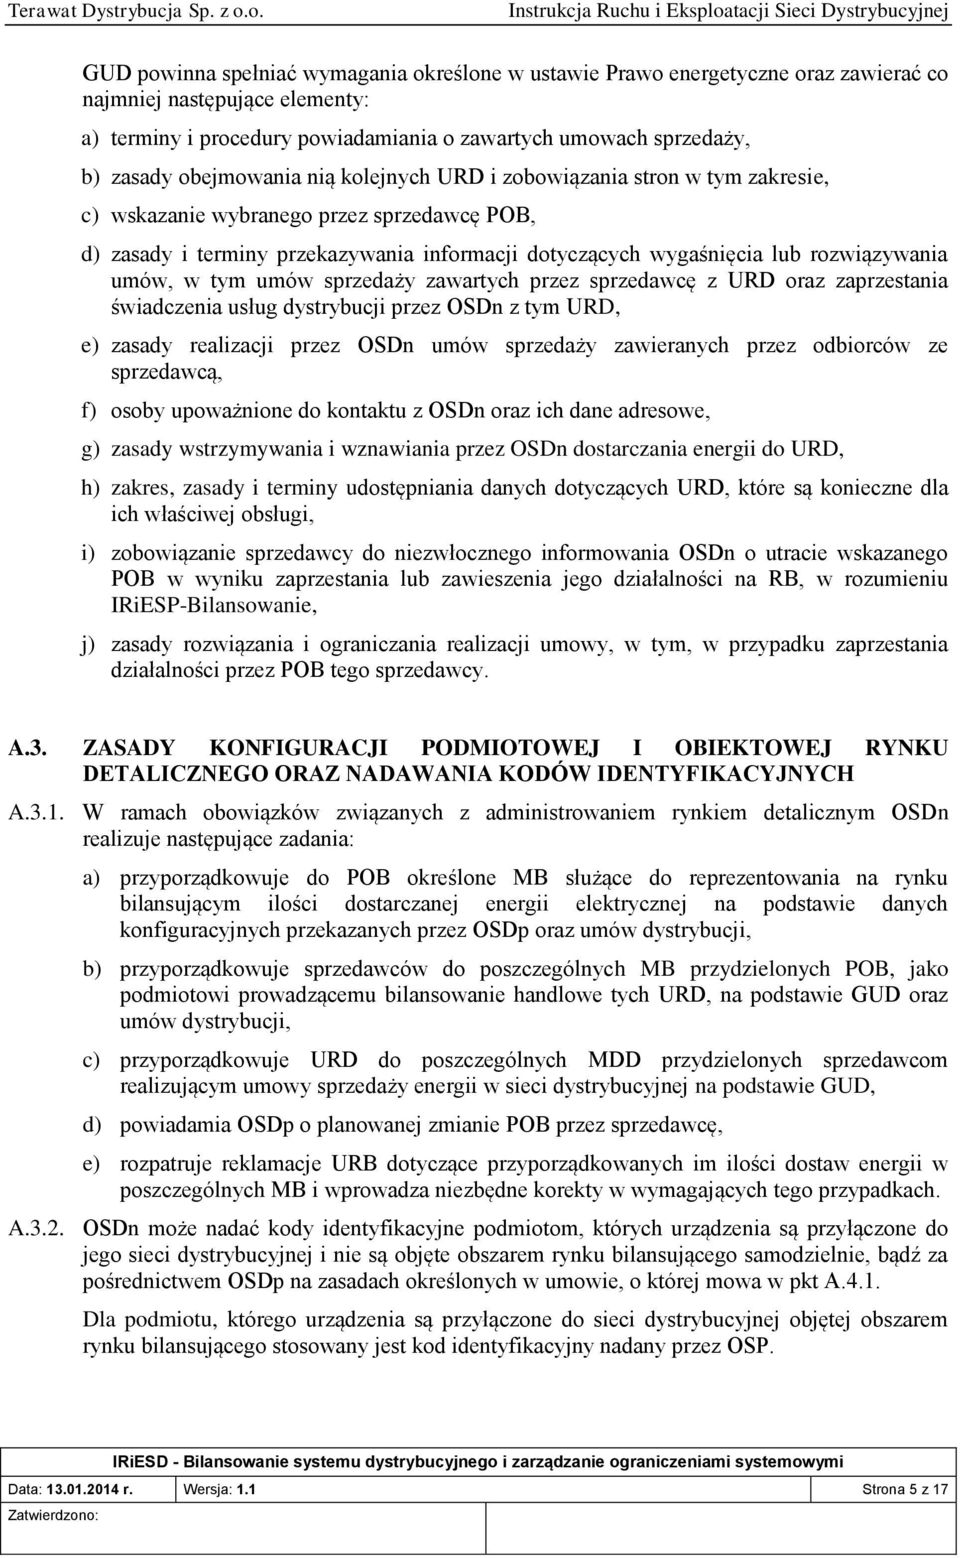 umów, w tym umów sprzedaży zawartych przez sprzedawcę z URD oraz zaprzestania świadczenia usług dystrybucji przez OSDn z tym URD, e) zasady realizacji przez OSDn umów sprzedaży zawieranych przez